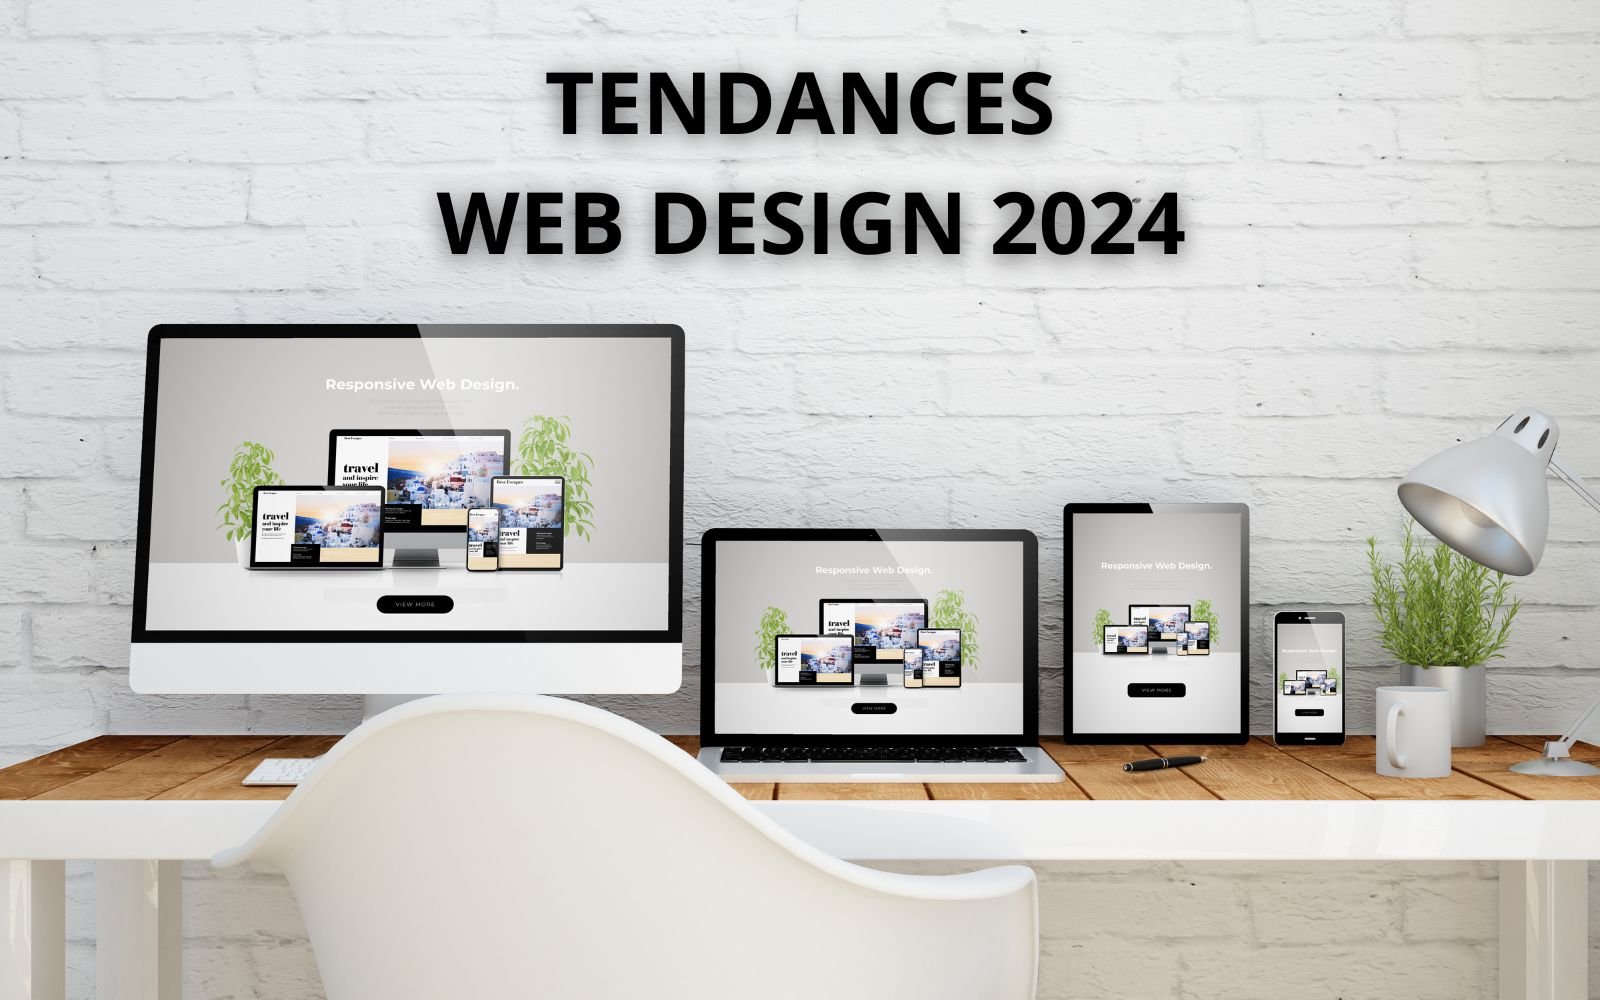 photo d'écran ordinateur de bureau, ordinateur portable, tablette et smartphone tous posés sur un bureau avec le texte "Tendances web design 2024"